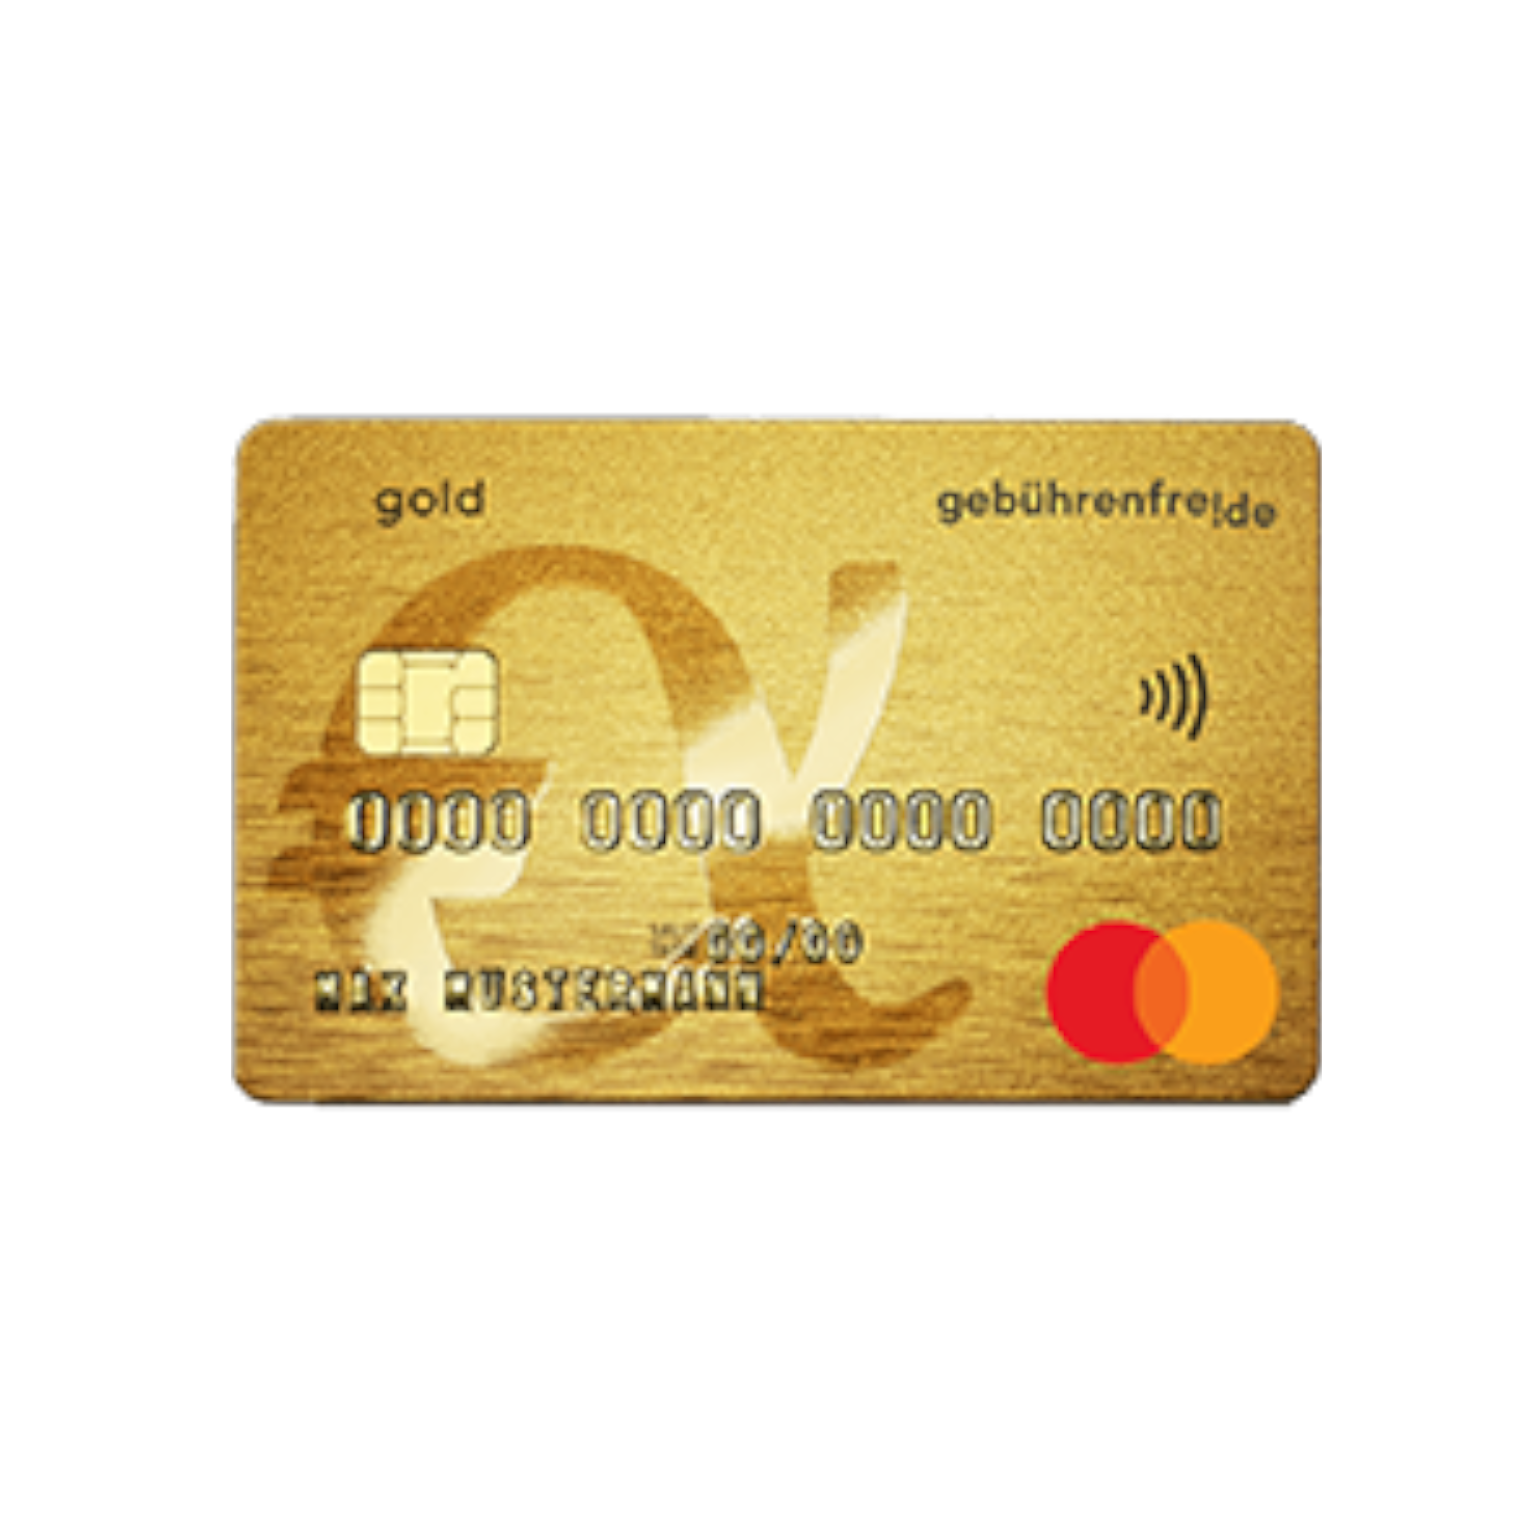 Kostenlose Revolving Kreditkarte von der Advanzia Banz